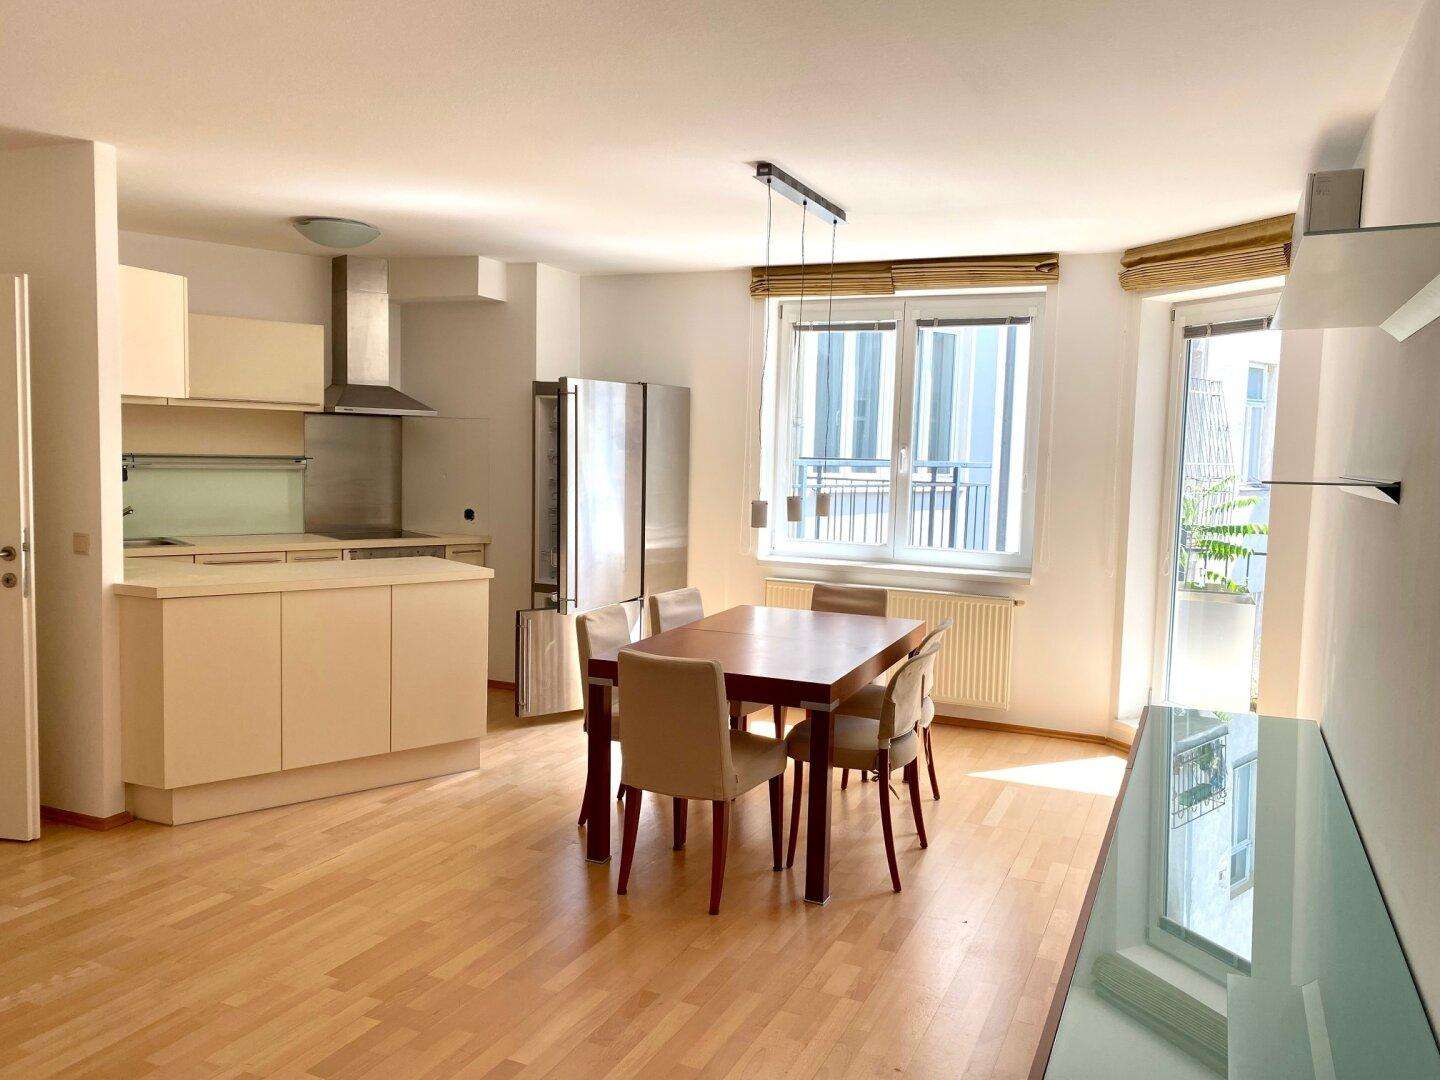 Moderne, ruhige Wohnung mit Balkon in bester Lage in der Josefstadt